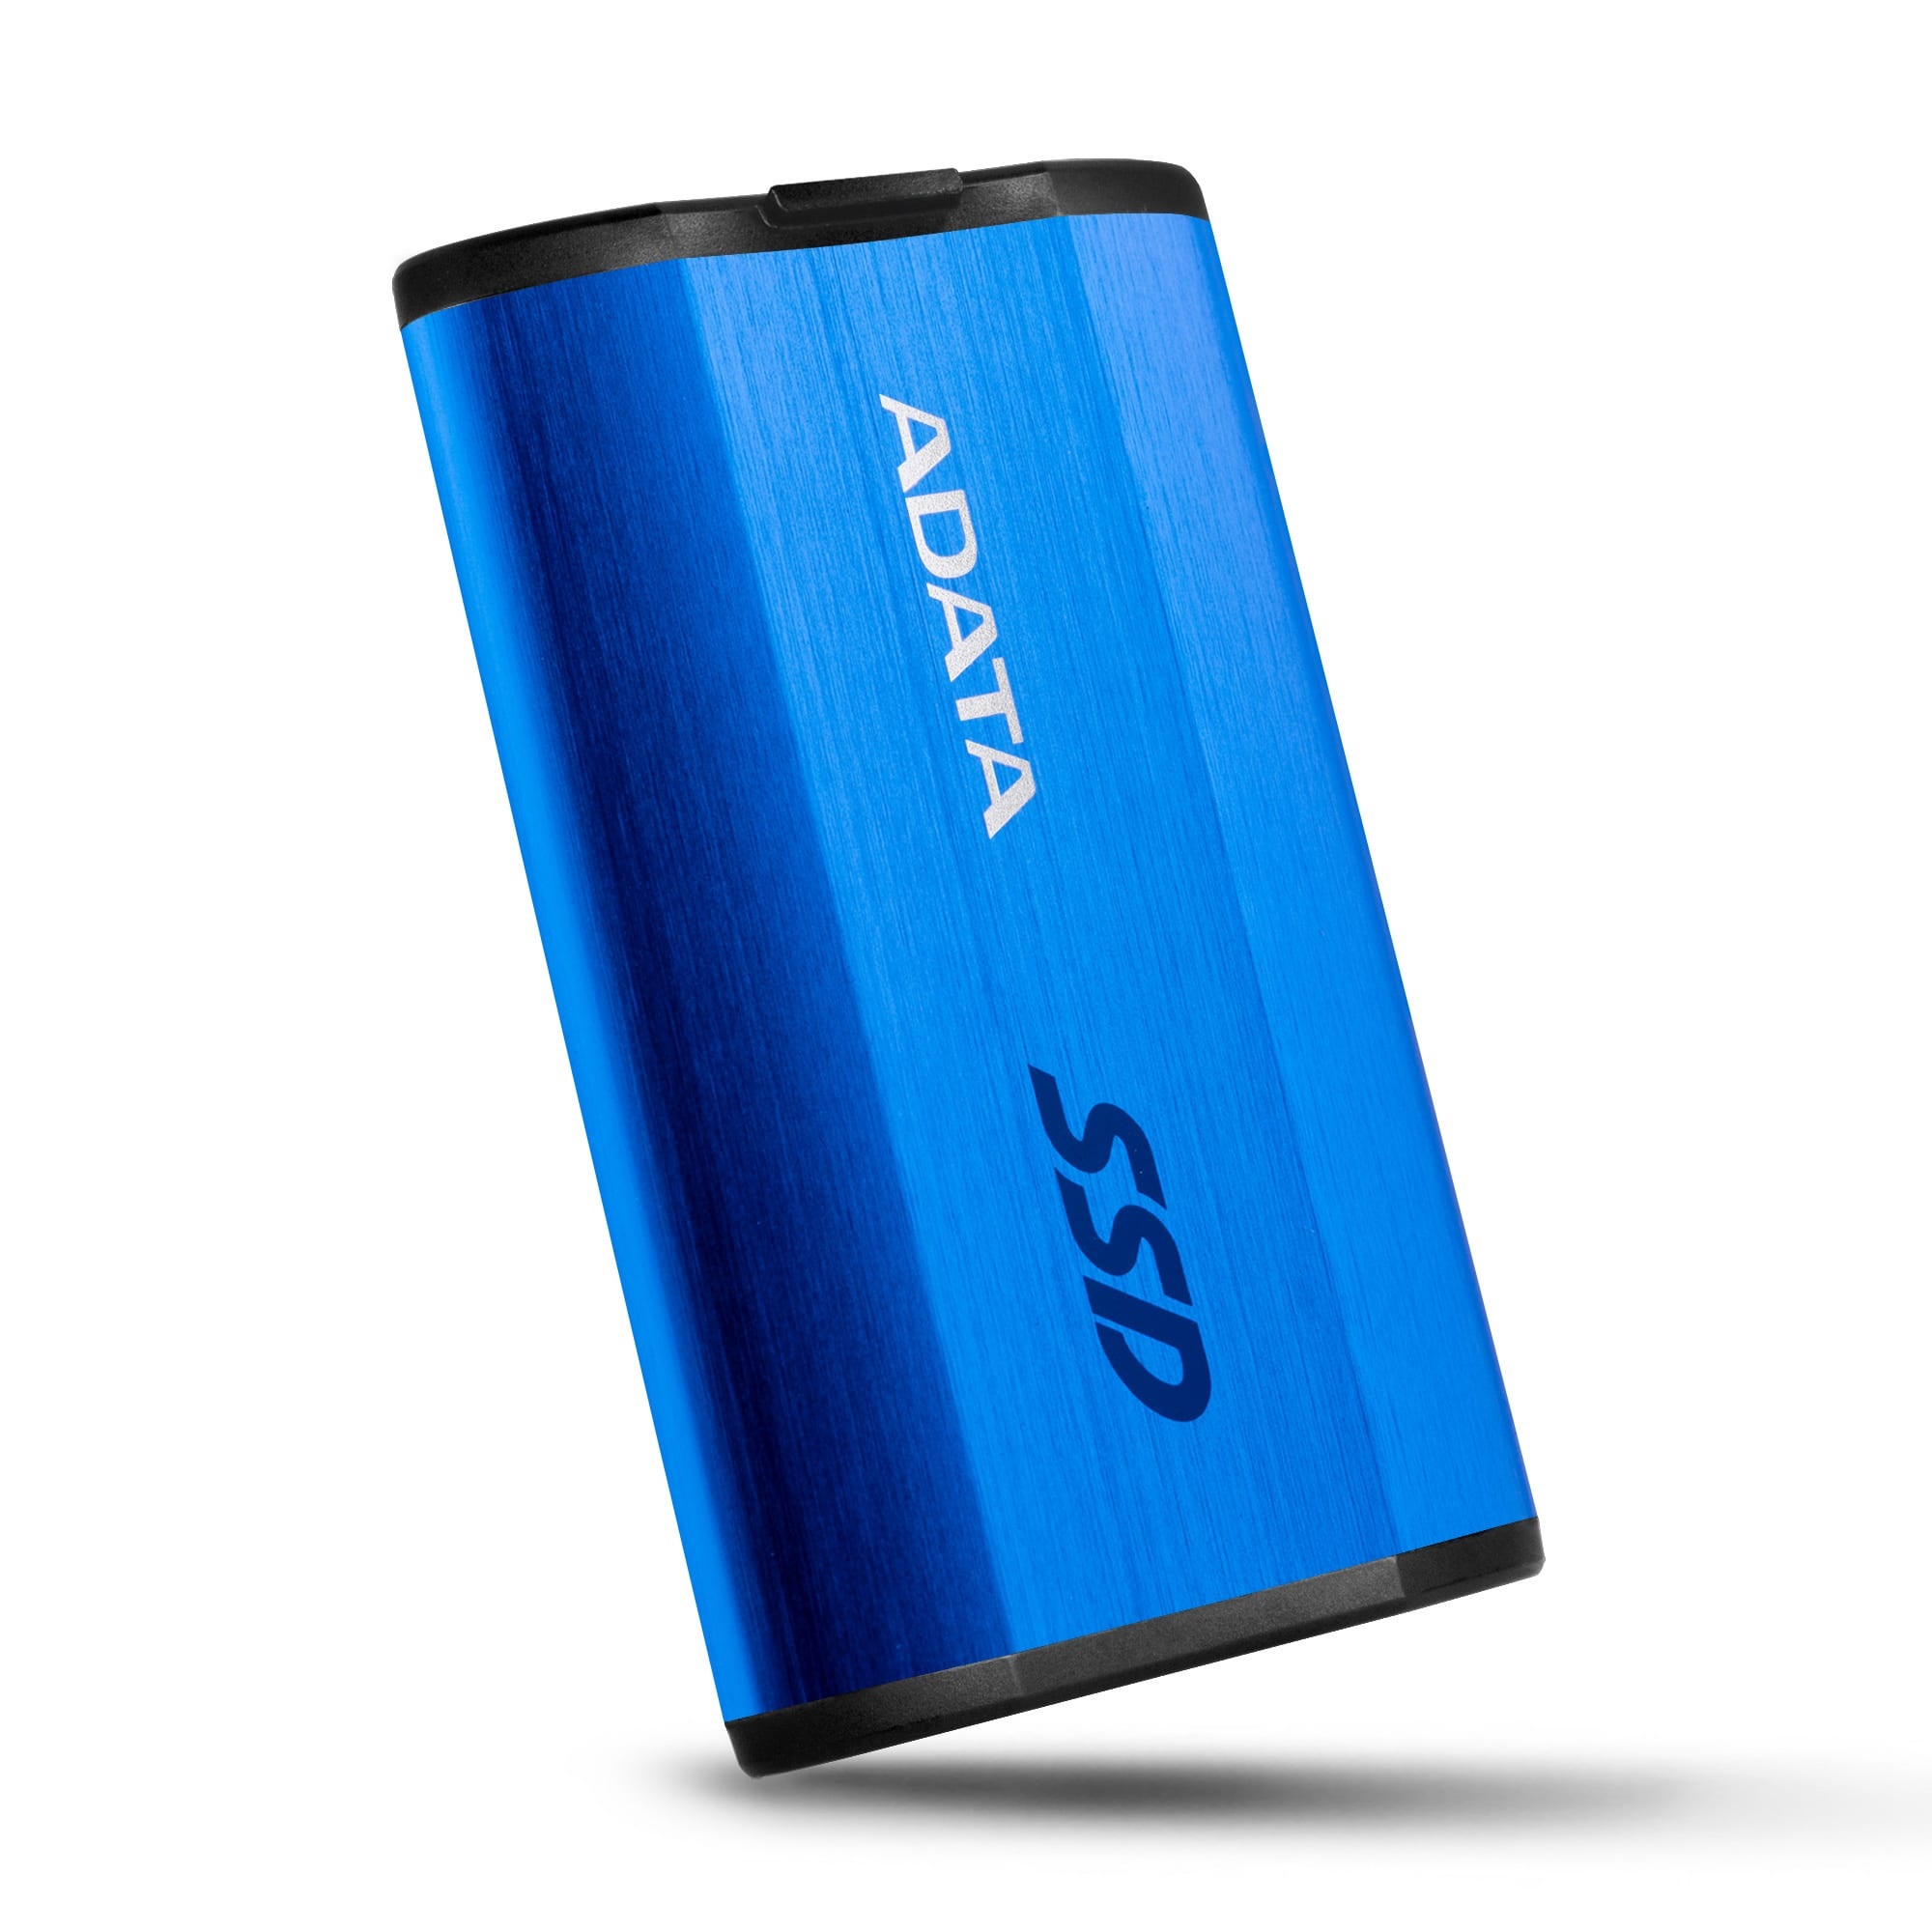 A-Data SSD SE800, 512GB, USB-C 3.2-rychlost 1000 MB/s (ASE800-512GU32G2-CBK), Black